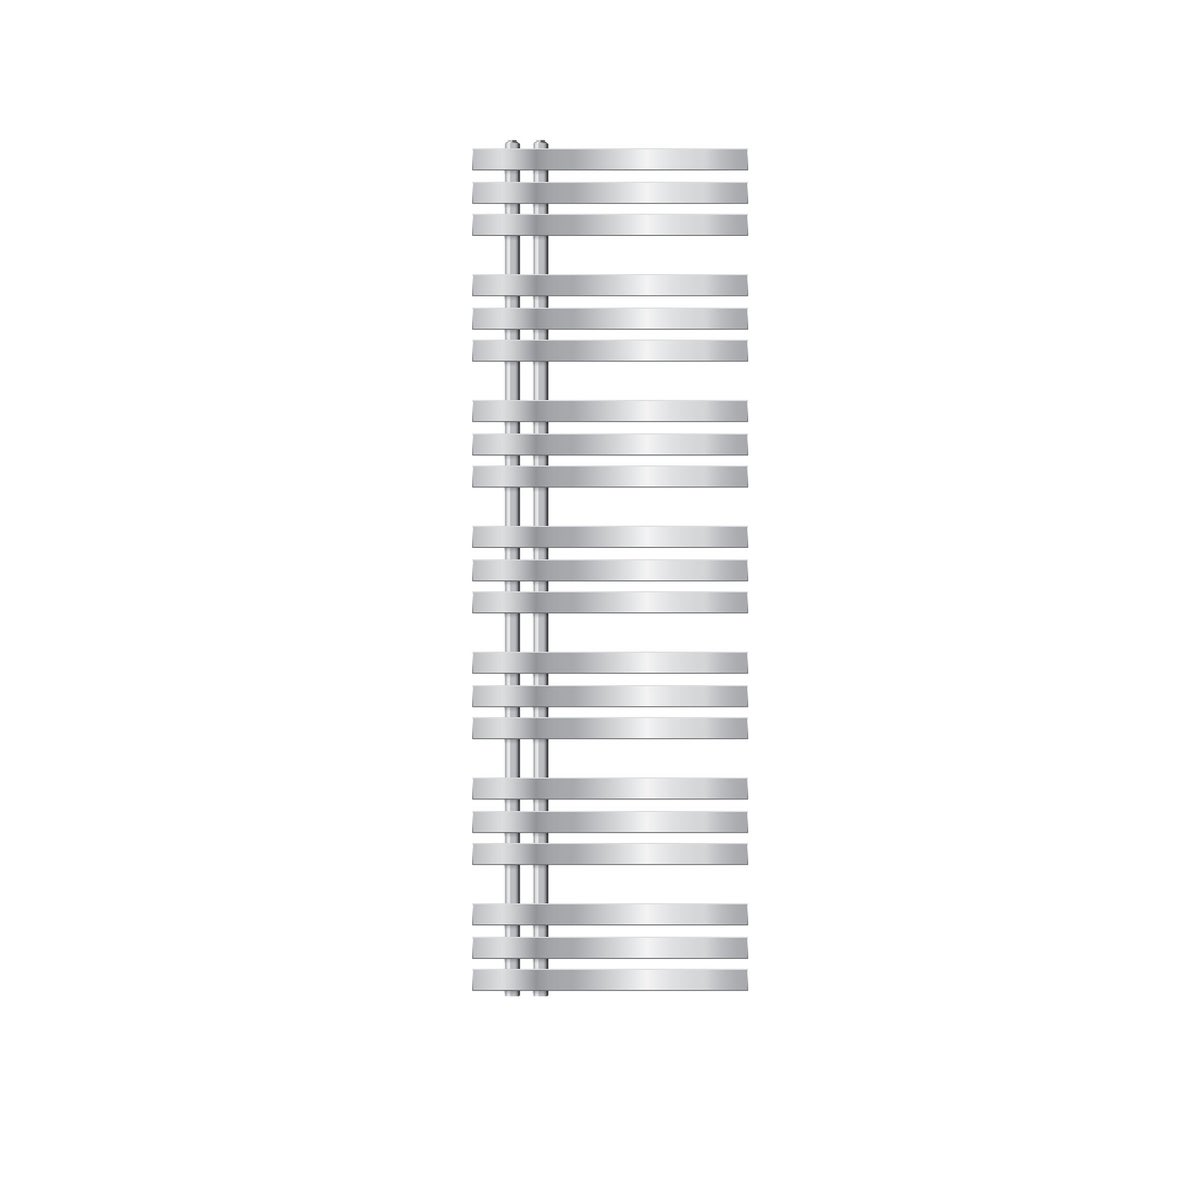 LuxeBath Design Badheizkörper Iron EM 500 x 1600 mm, Chrom, Designheizkörper Paneelheizkörper Flachheizkörper Heizkörper Handtuchwärmer Handtuchtrockner Bad/Wohnraum Heizung, inkl. Montage-Set